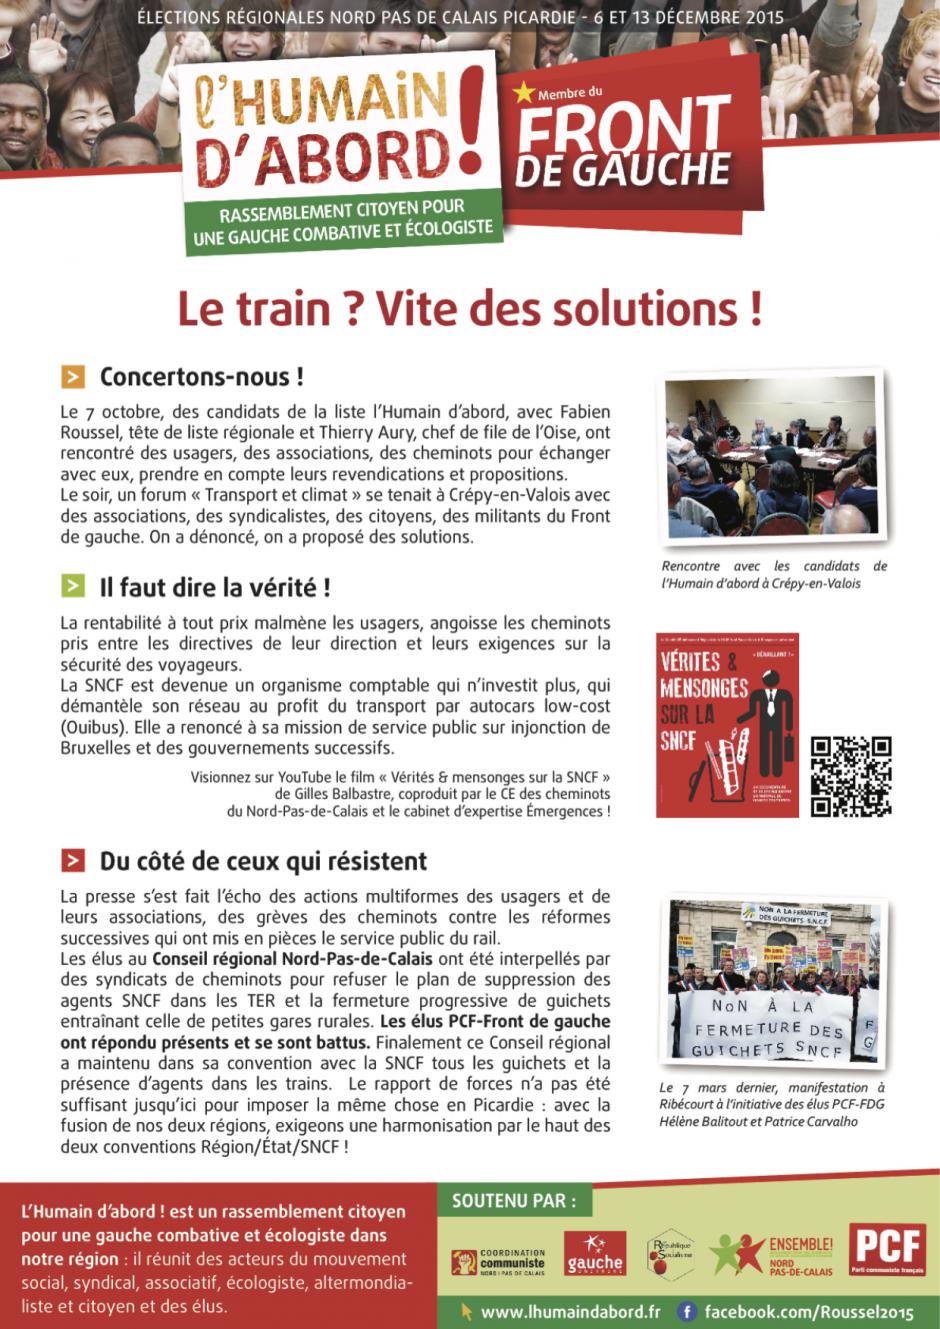 Tract de campagne de la liste Front de gauche l'Humain d'abord « Le train ? Vite des solutions »  - Oise, élection régionale Nord-Pas-de-Calais-Picardie, 9 novembre 2015